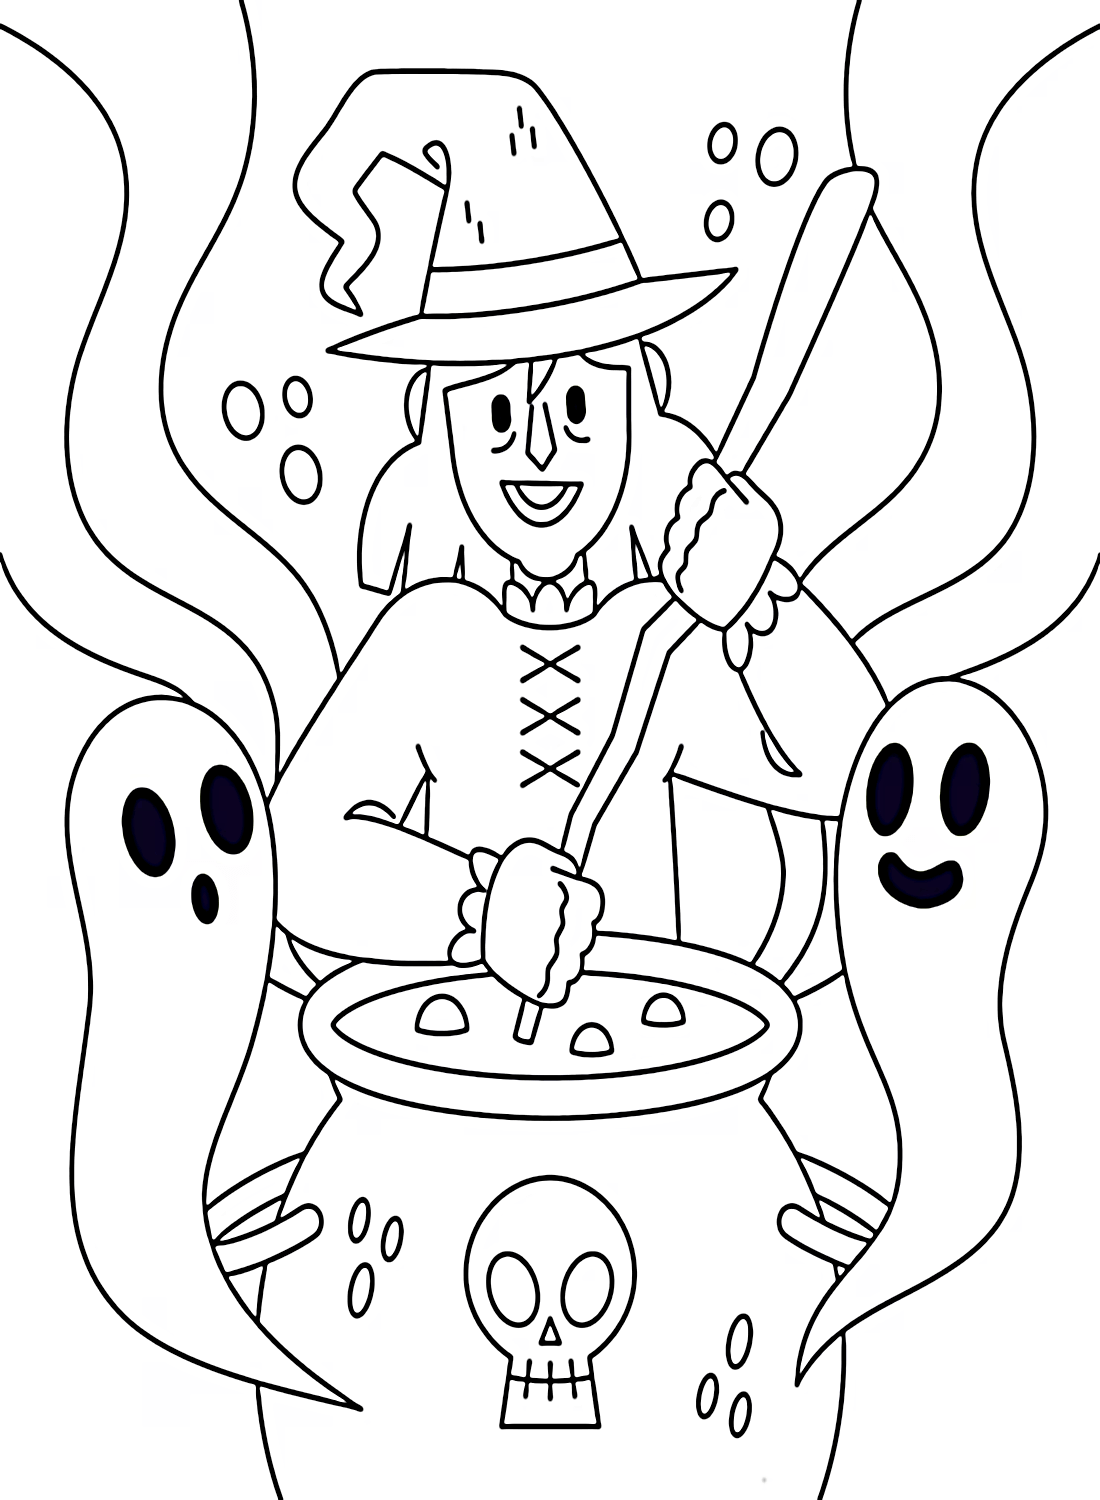 Página Do Livro De Coloração De Bruxas De Unicórnio Fofo Halloween